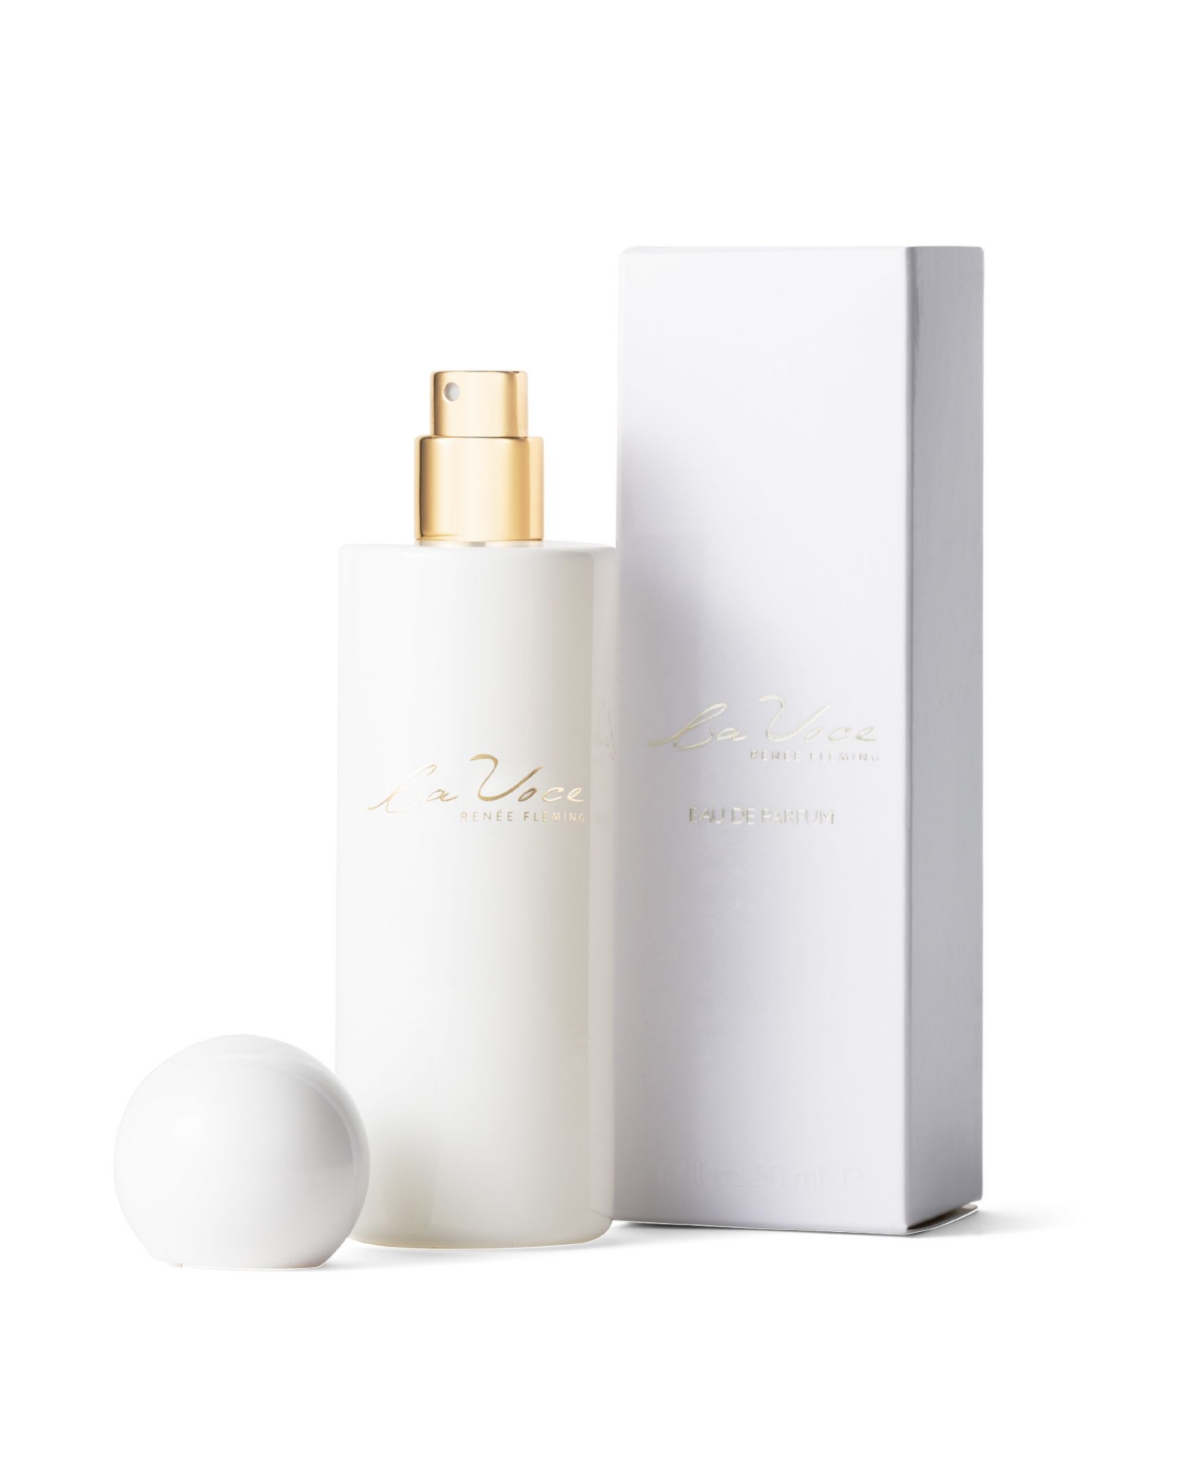 La Voce Women's Eau De Parfum, 1.7 oz